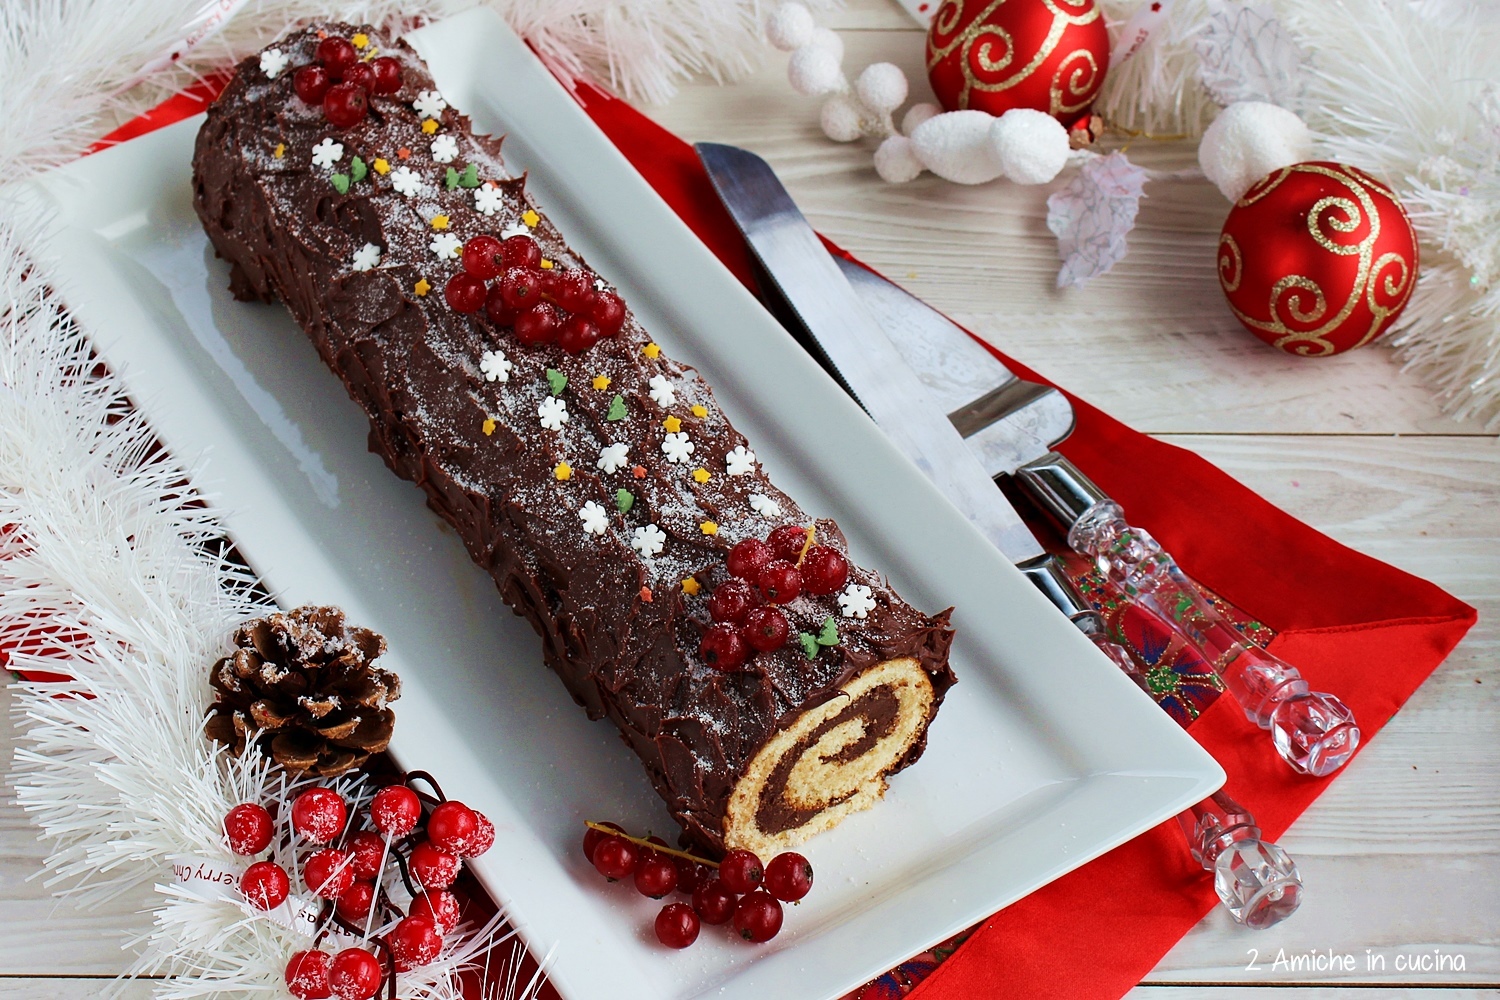 Tronchetto Di Natale Buche Noel.Tronchetto Al Cioccolato Buche De Noel 2 Amiche In Cucina